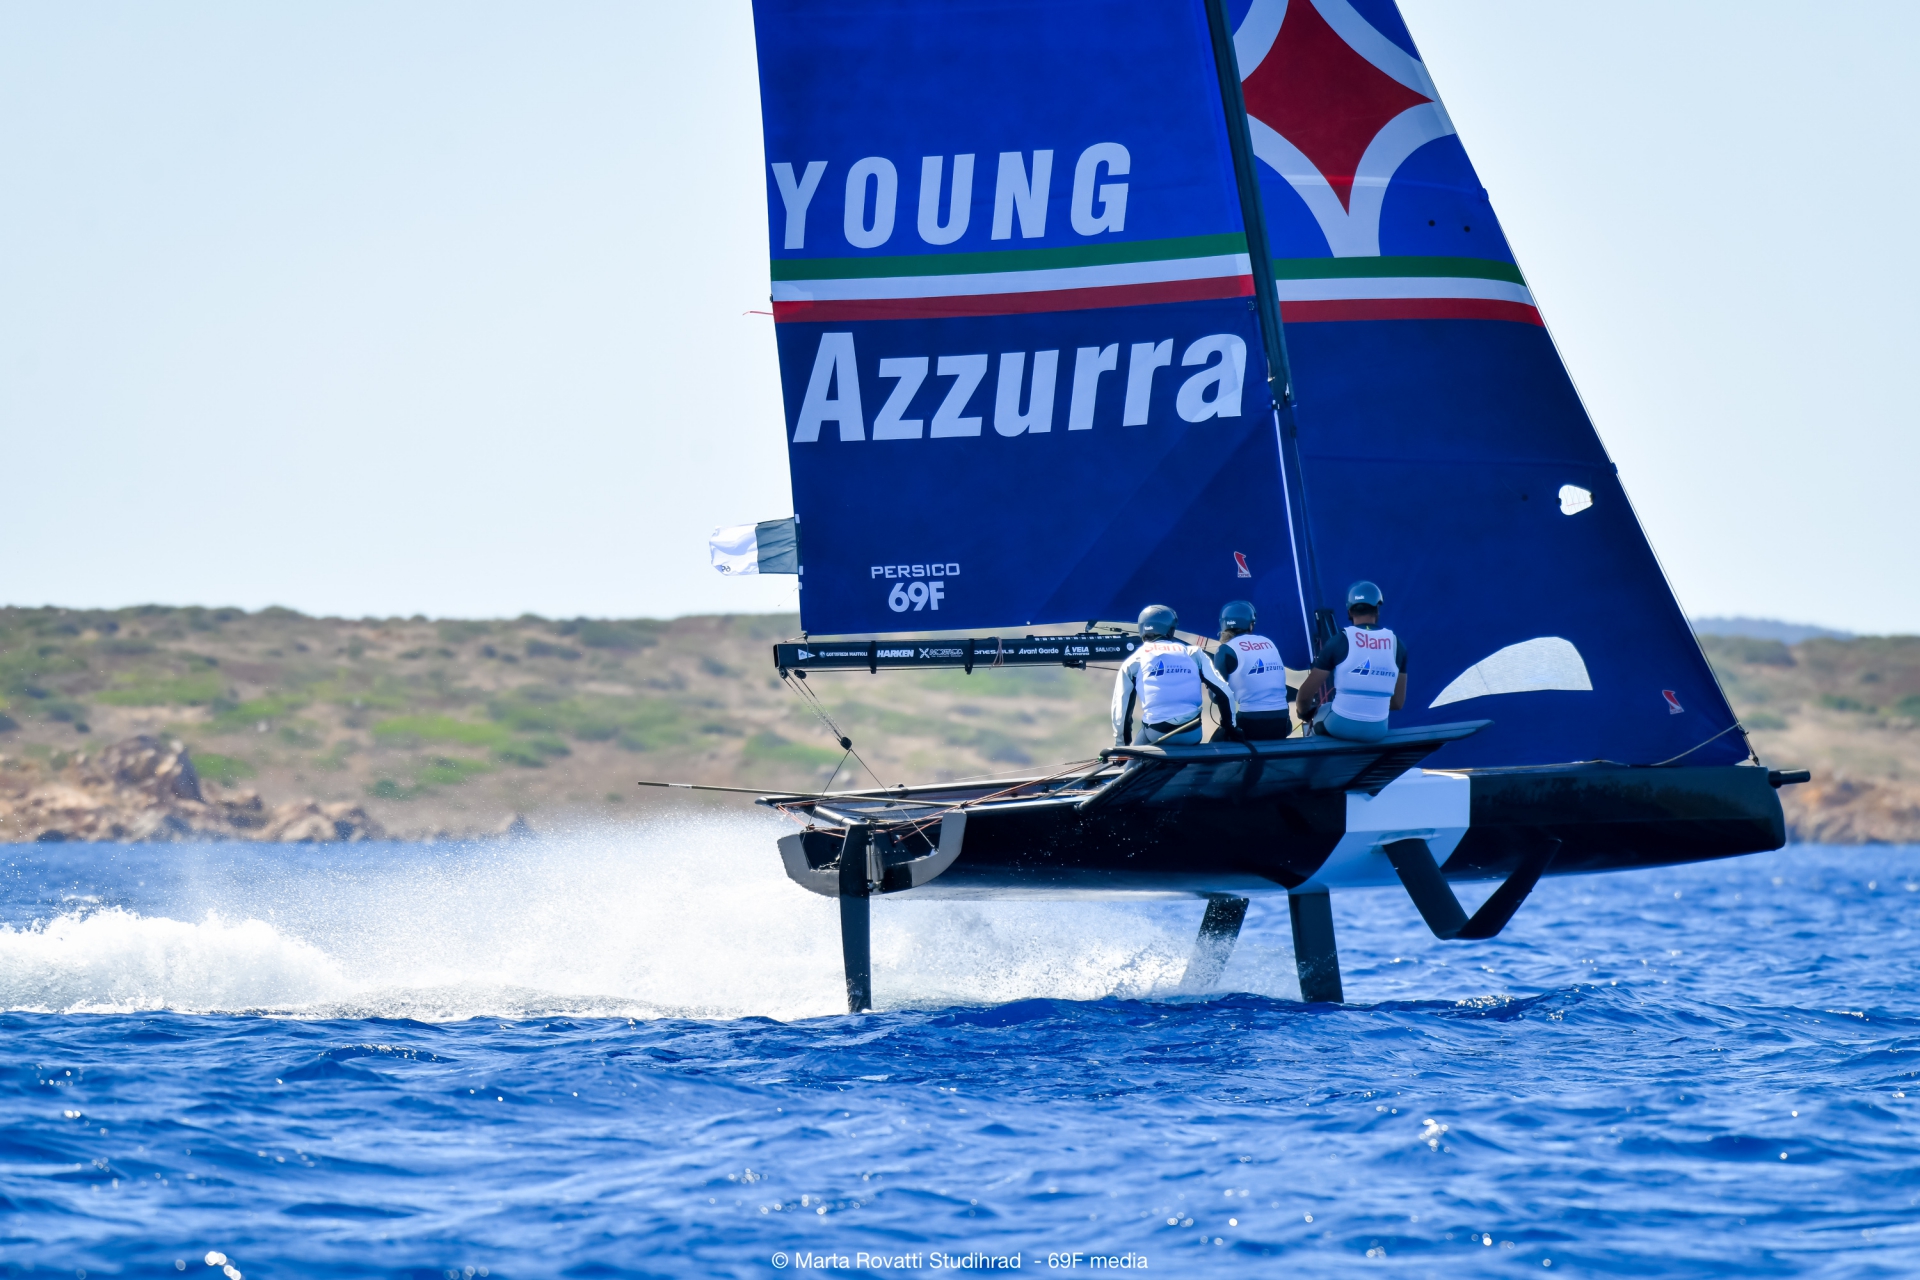 Con il Grand Finale della Youth Foiling Gold Cup si conclude il progetto Young Azzurra - MEMBER NEWS - Yacht Club Costa Smeralda